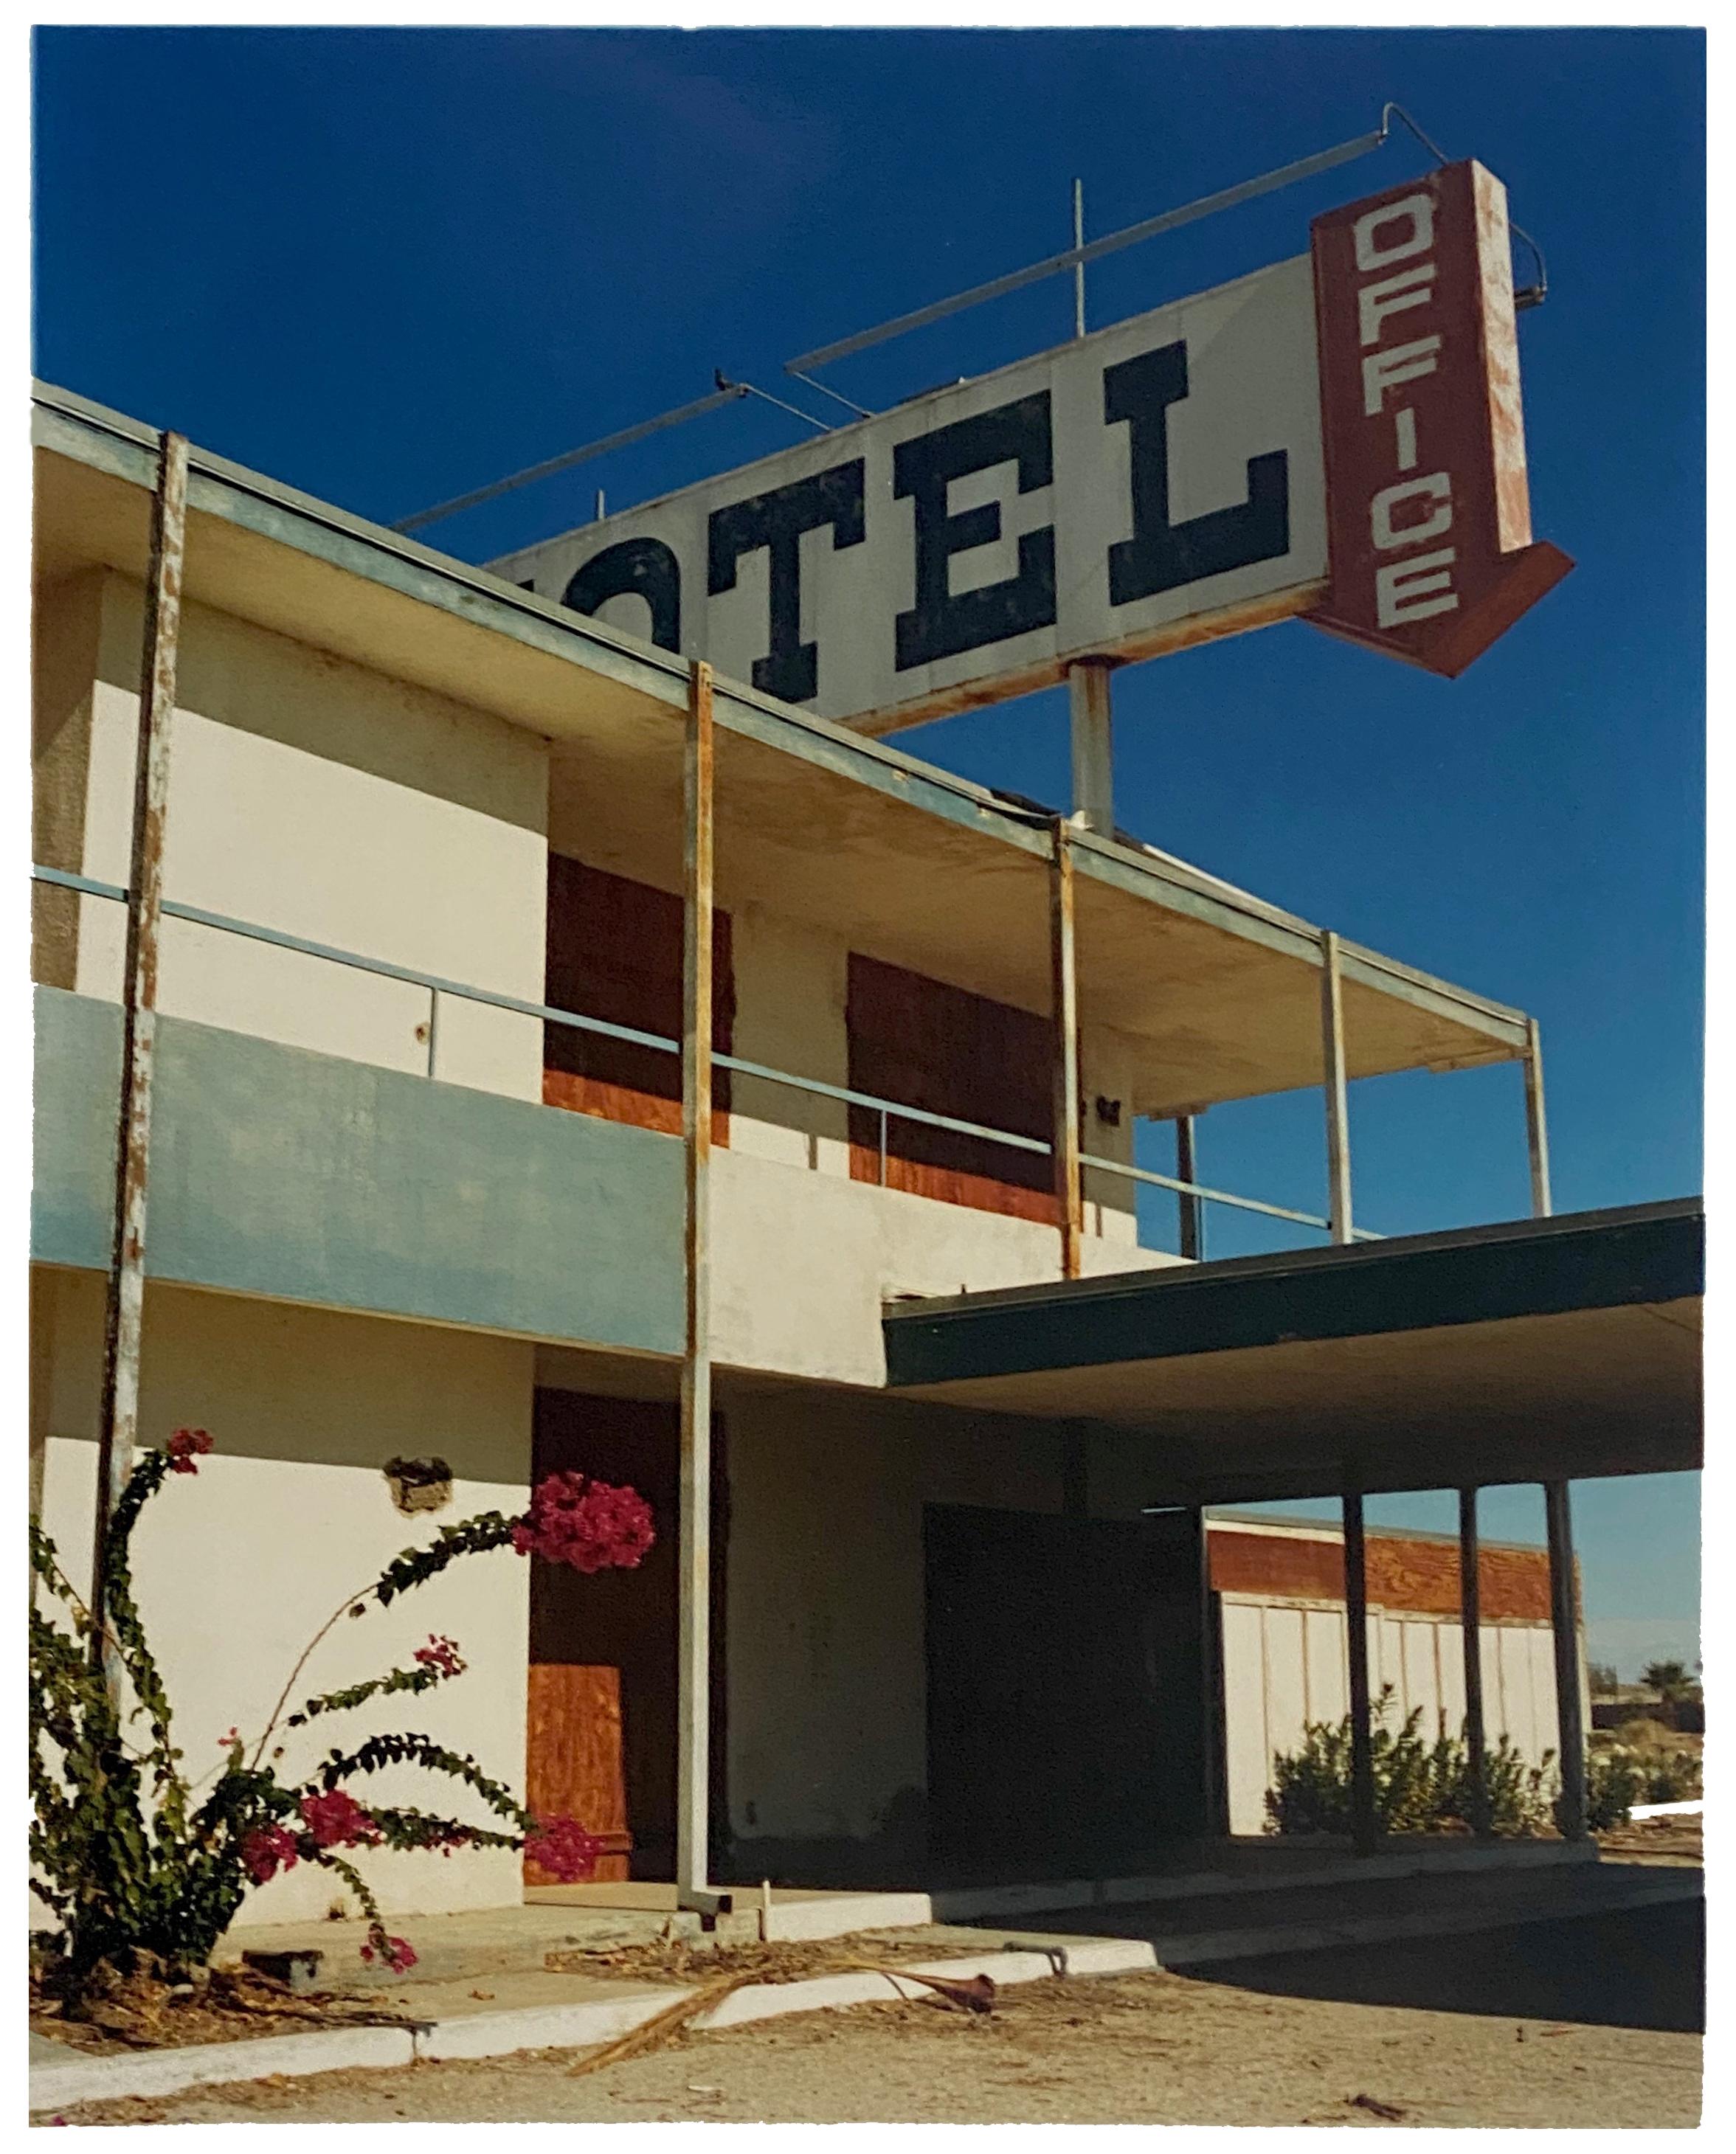 North Shore Motel Office II, Salton Sea, California - Architectural Color Photo